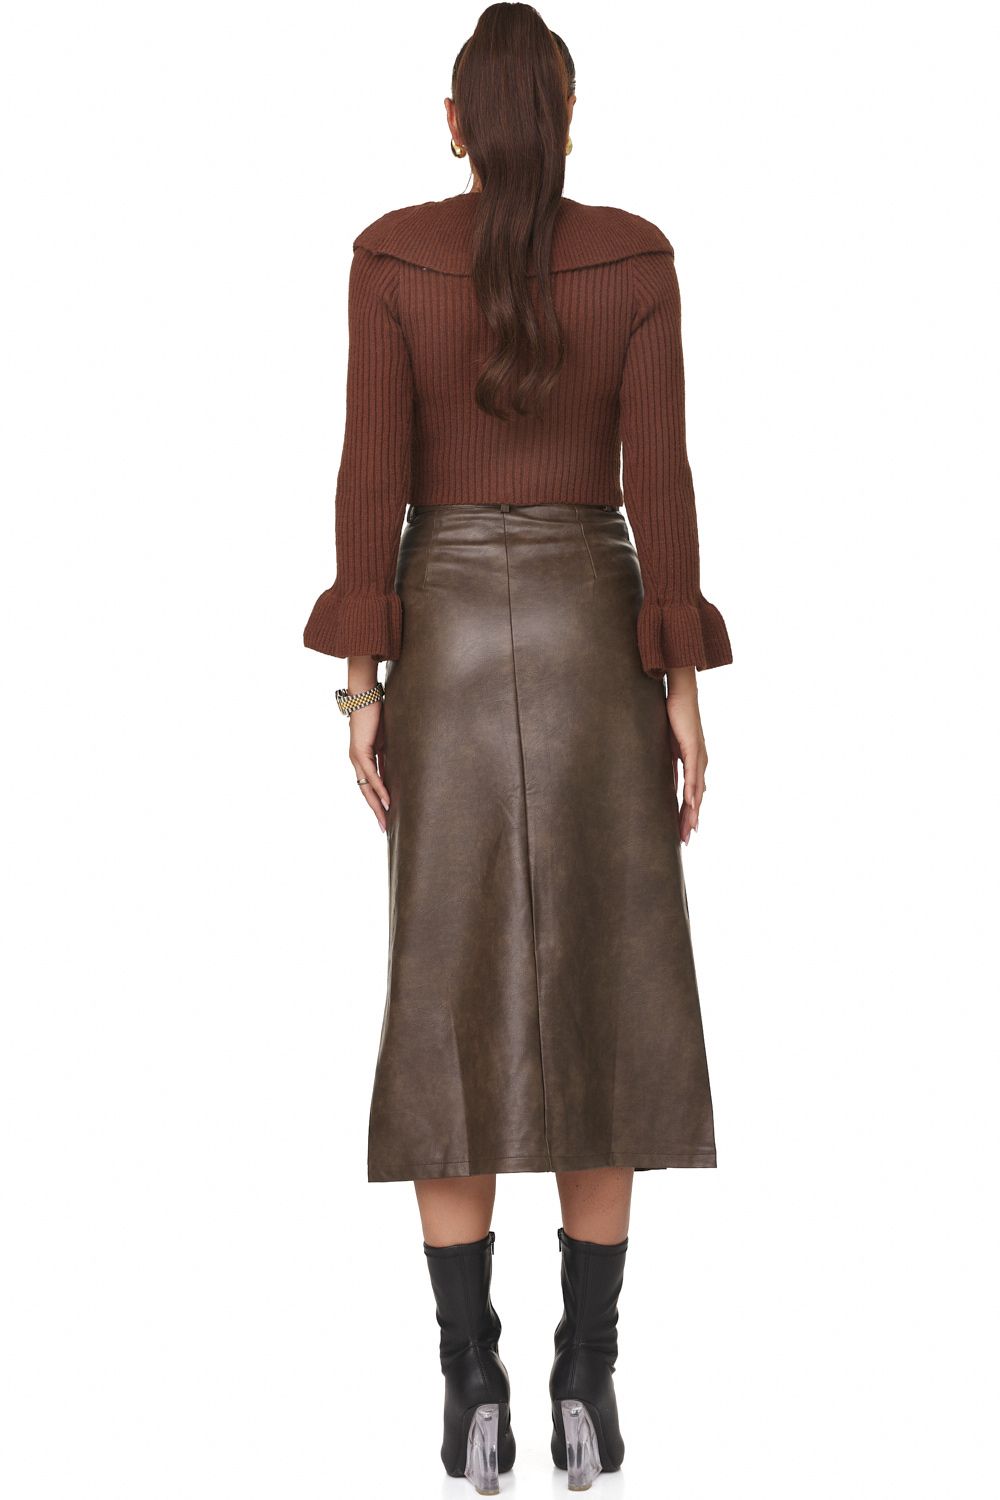 Sienia Bogas casual brown ladies skirt